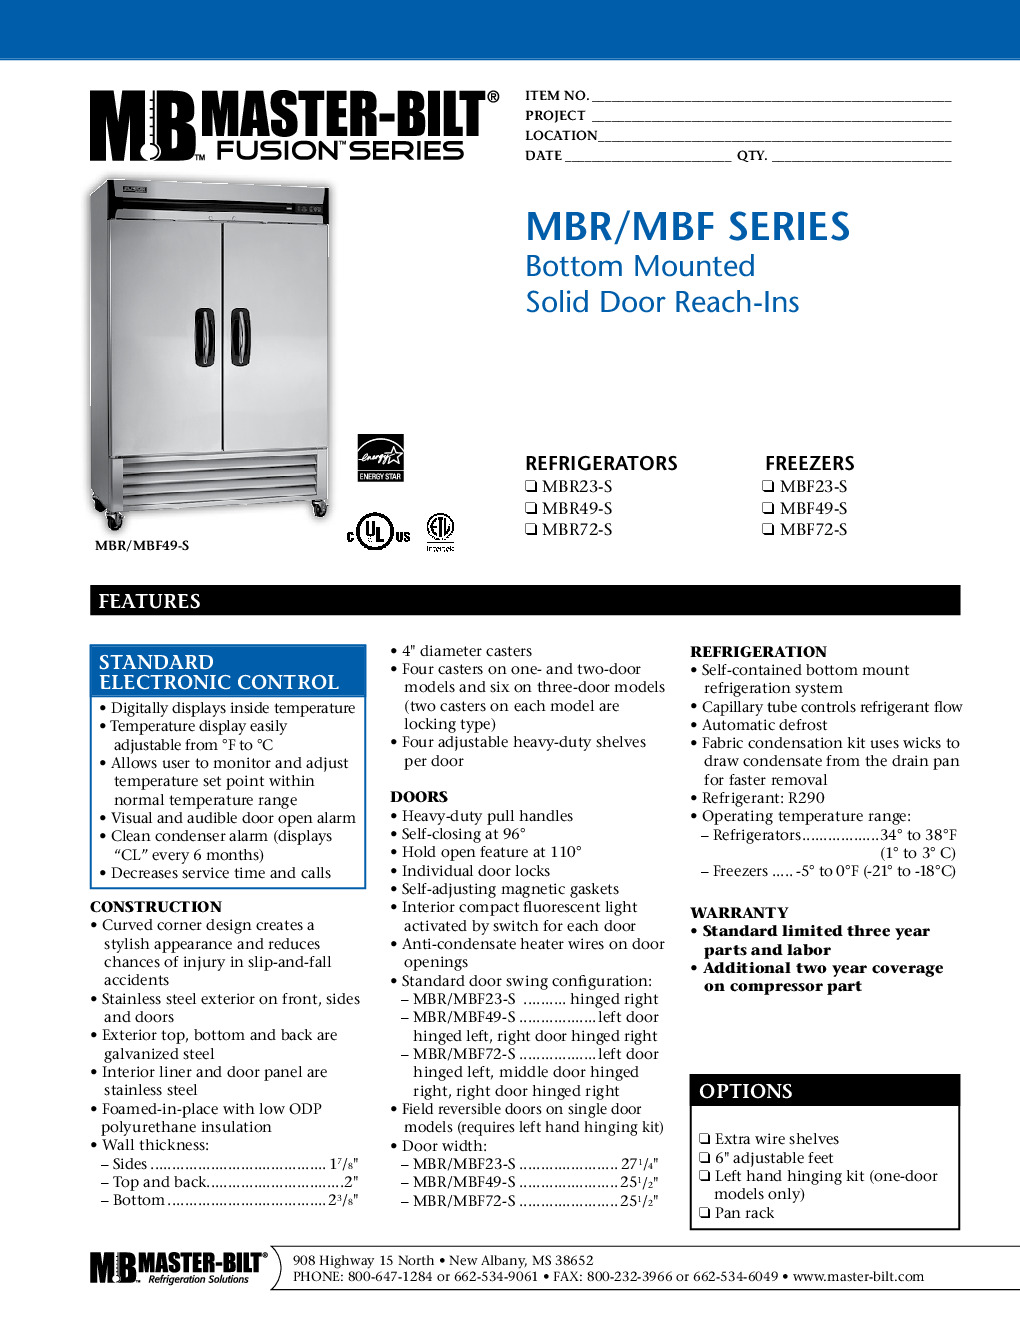 Master-Bilt MBF72-S Reach-In Freezer